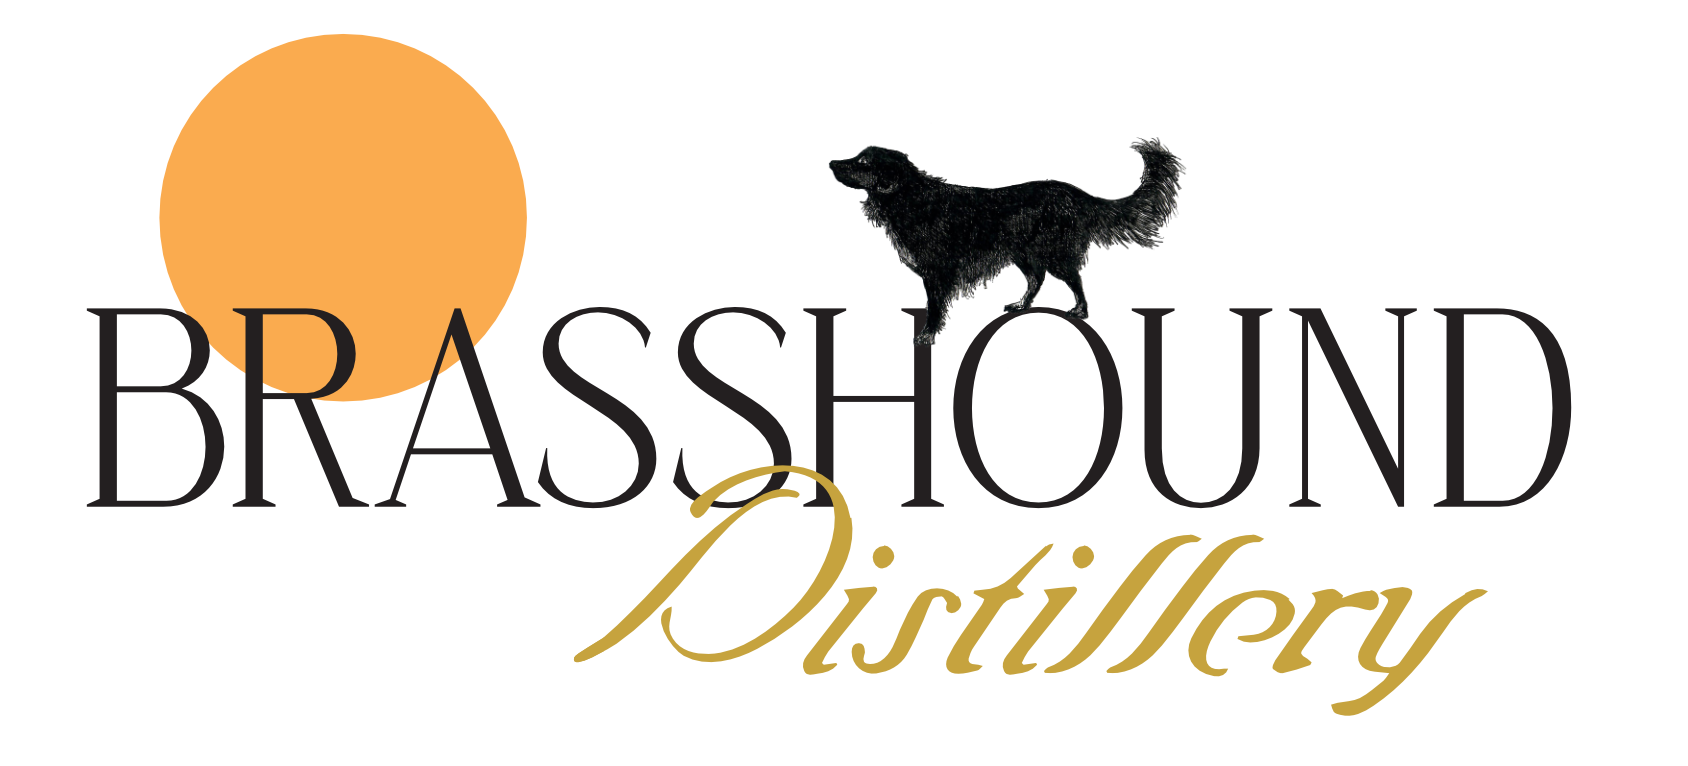 Brasshound